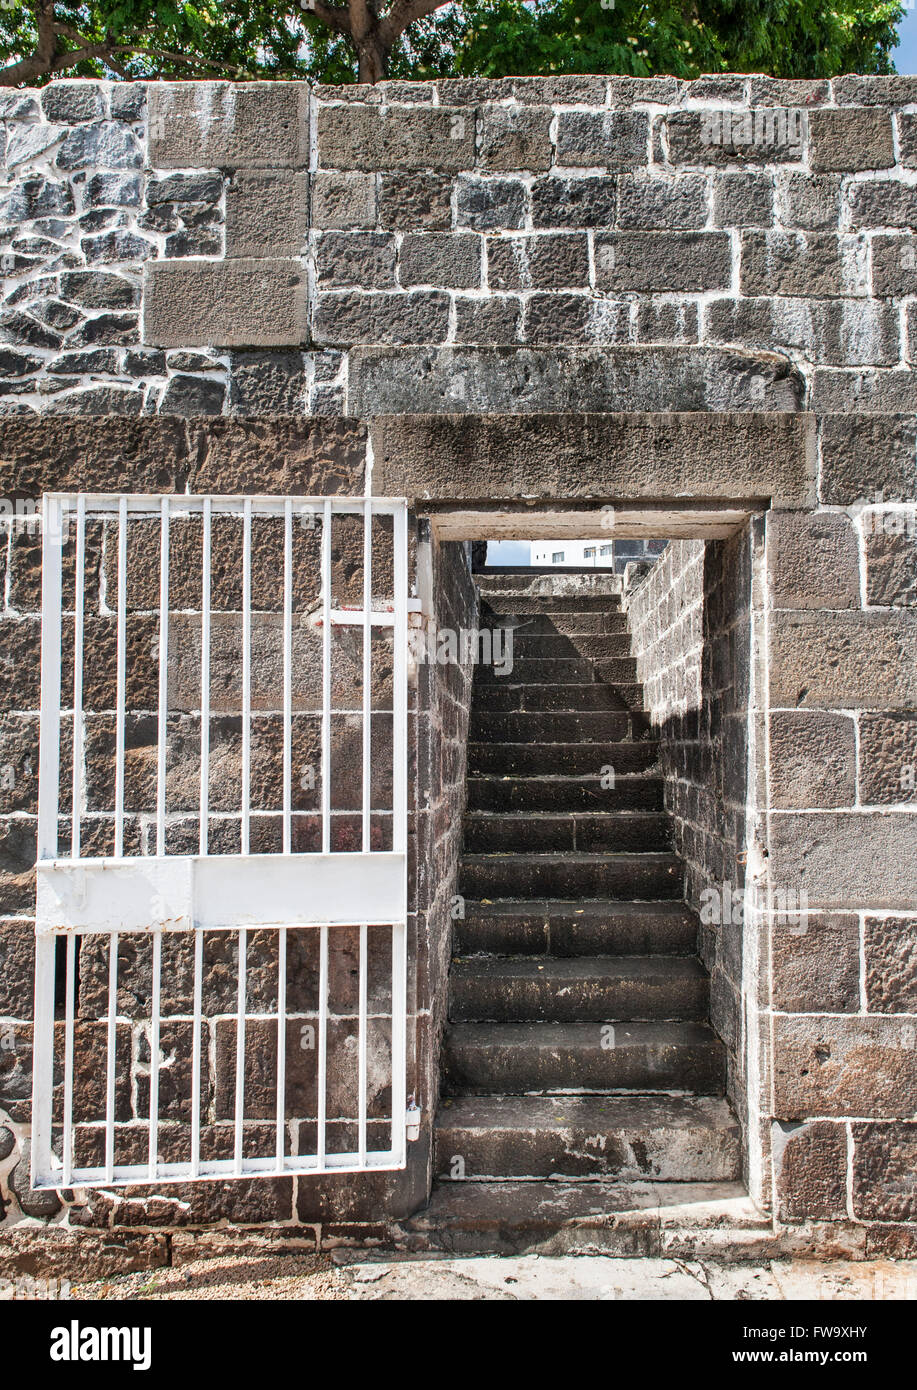 Schritte des Aapravasi Ghat (die Einwanderung Depot) in Port Louis, der Hauptstadt von Mauritius. Stockfoto